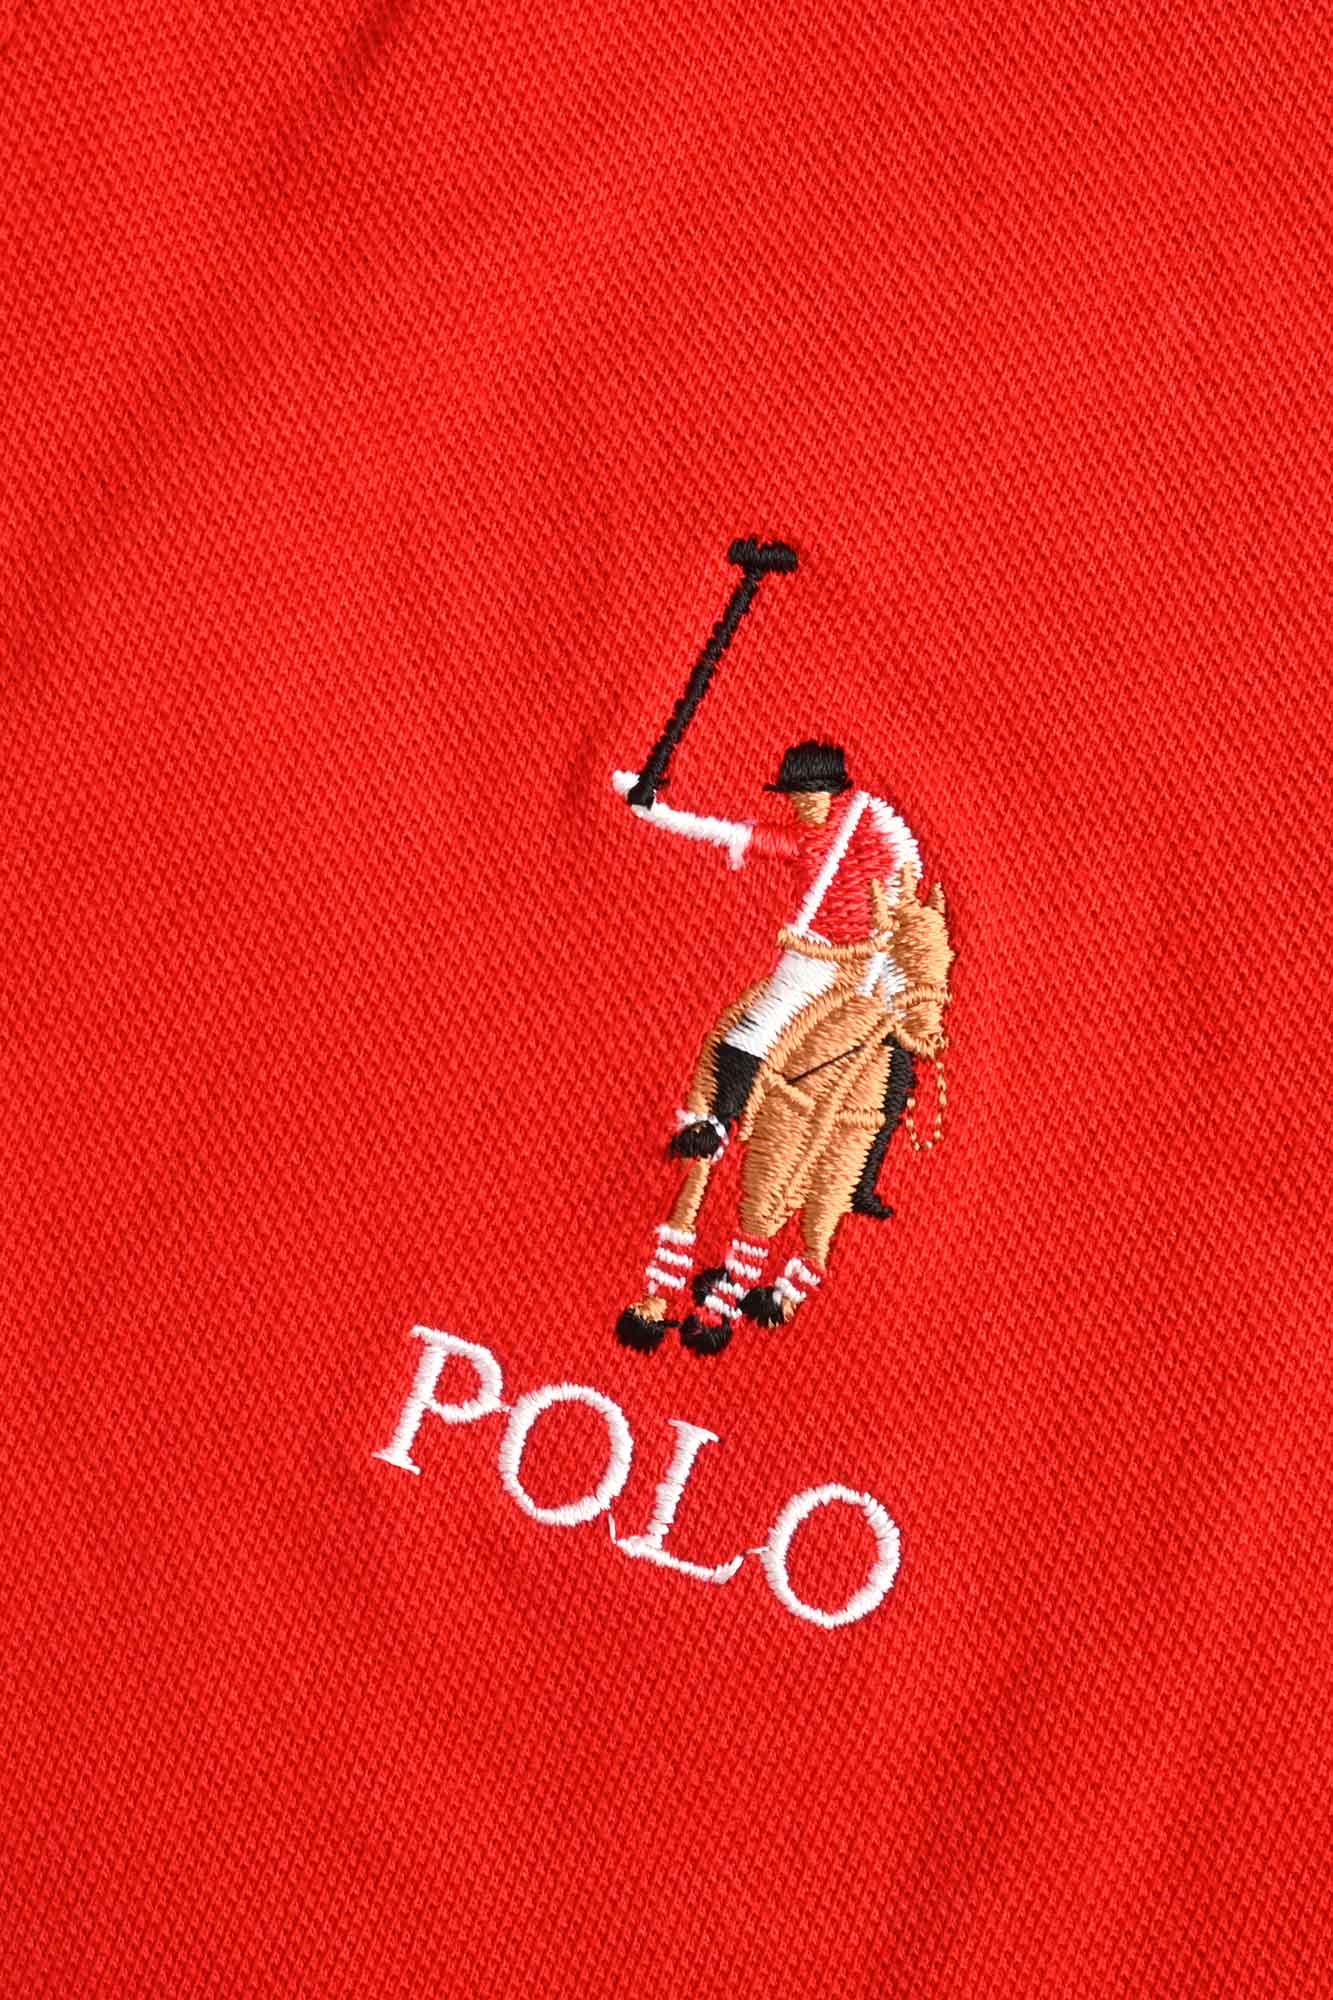 Polo Republica Men's Signature Pony Polo Embroidered Contrast Panel Polo Shirt Men's Polo Shirt Polo Republica 